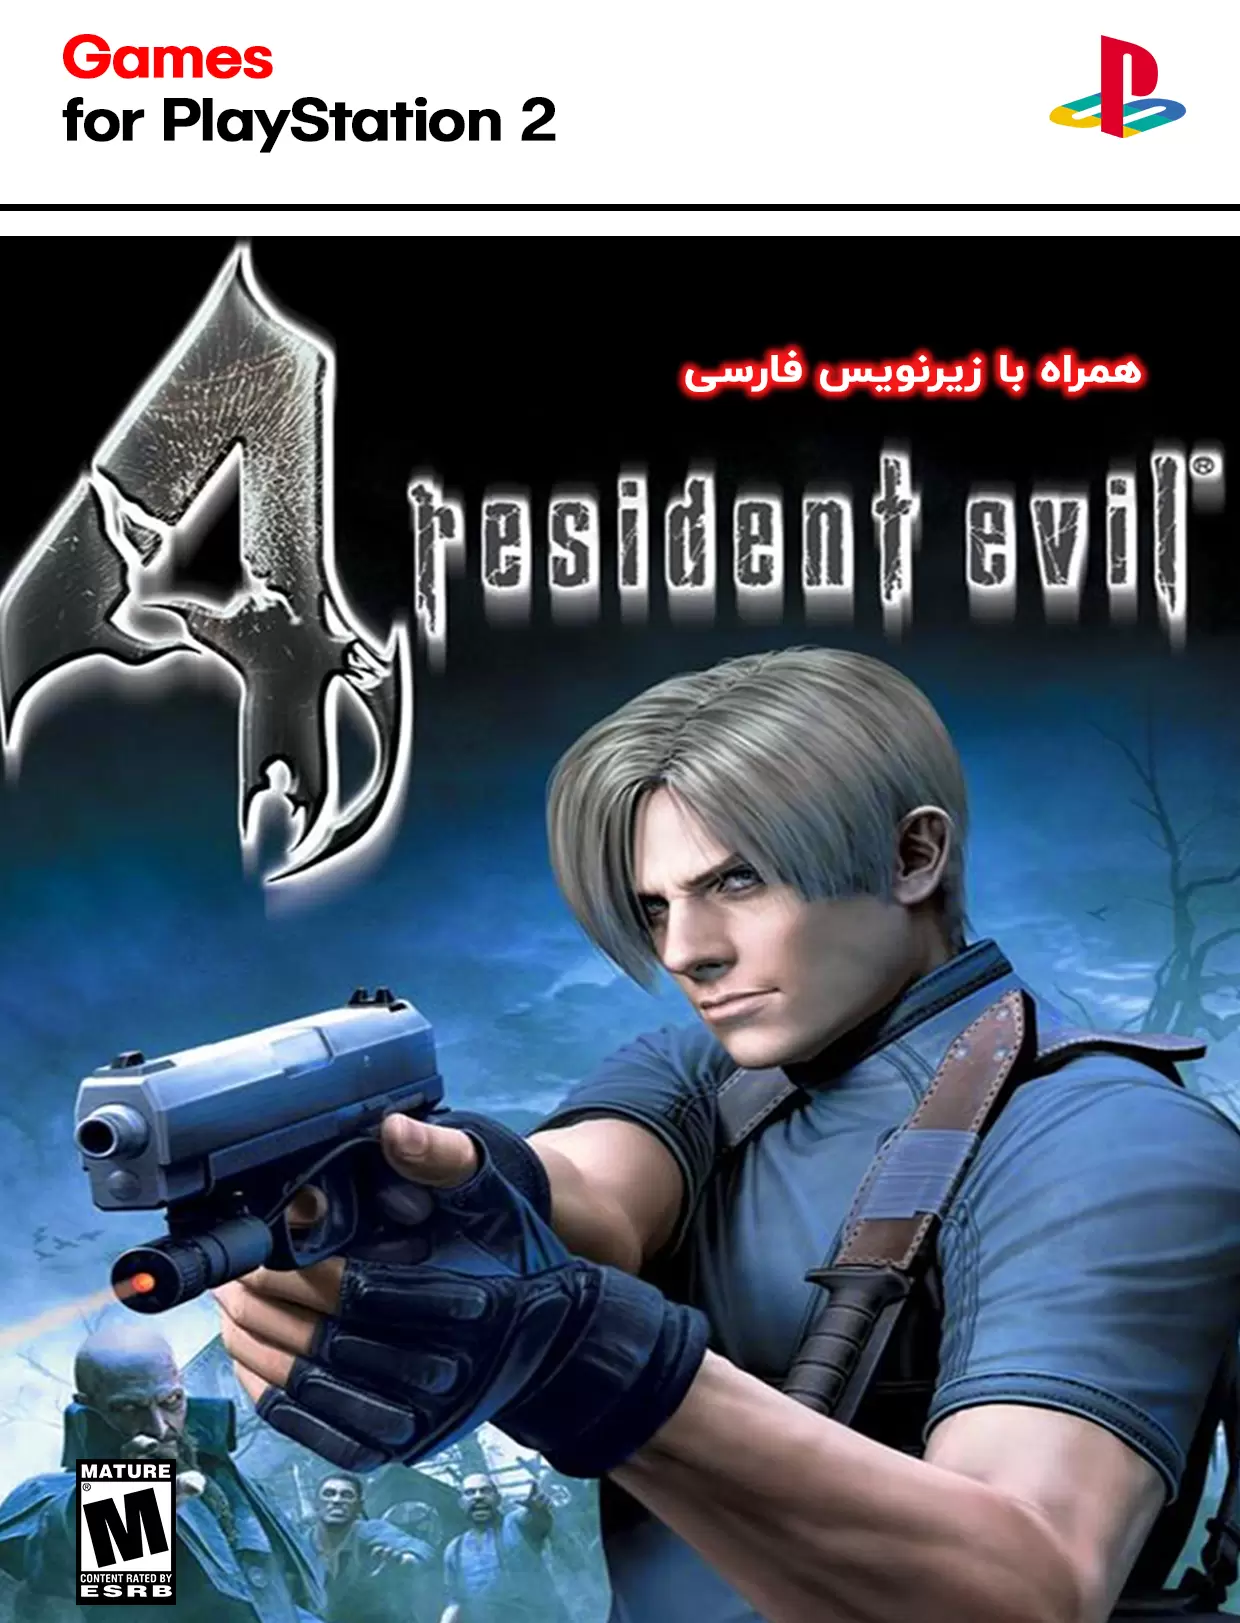  دانلود بازی رزیدنت اویل Resident Evil 4 برای PS2